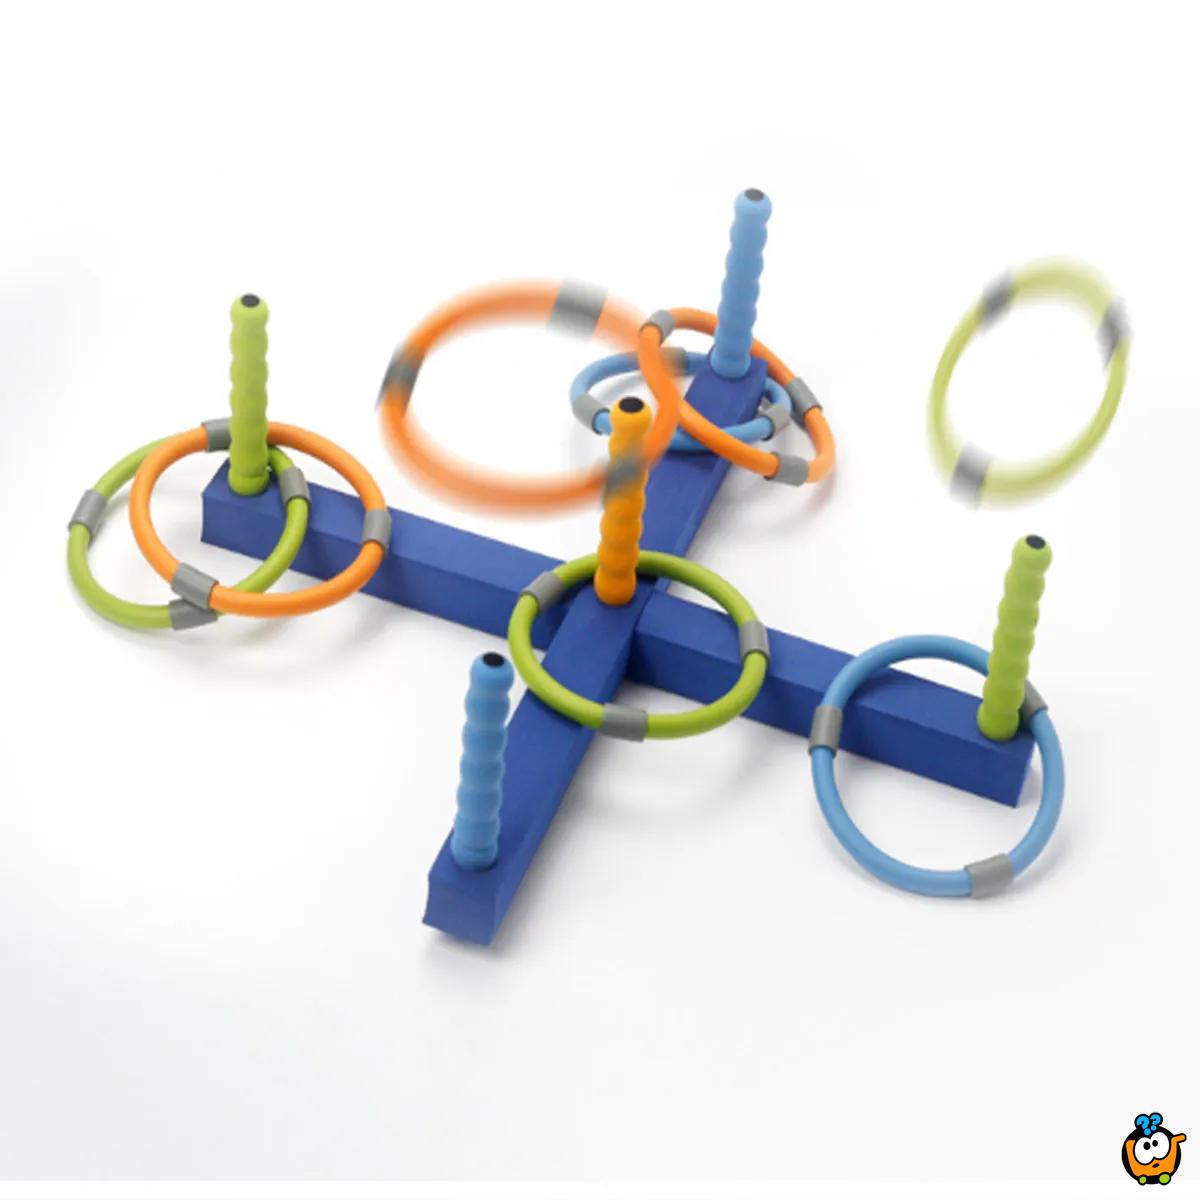 Nabaci obruč - Edukativna igračka za razvijanje motrike kod dece